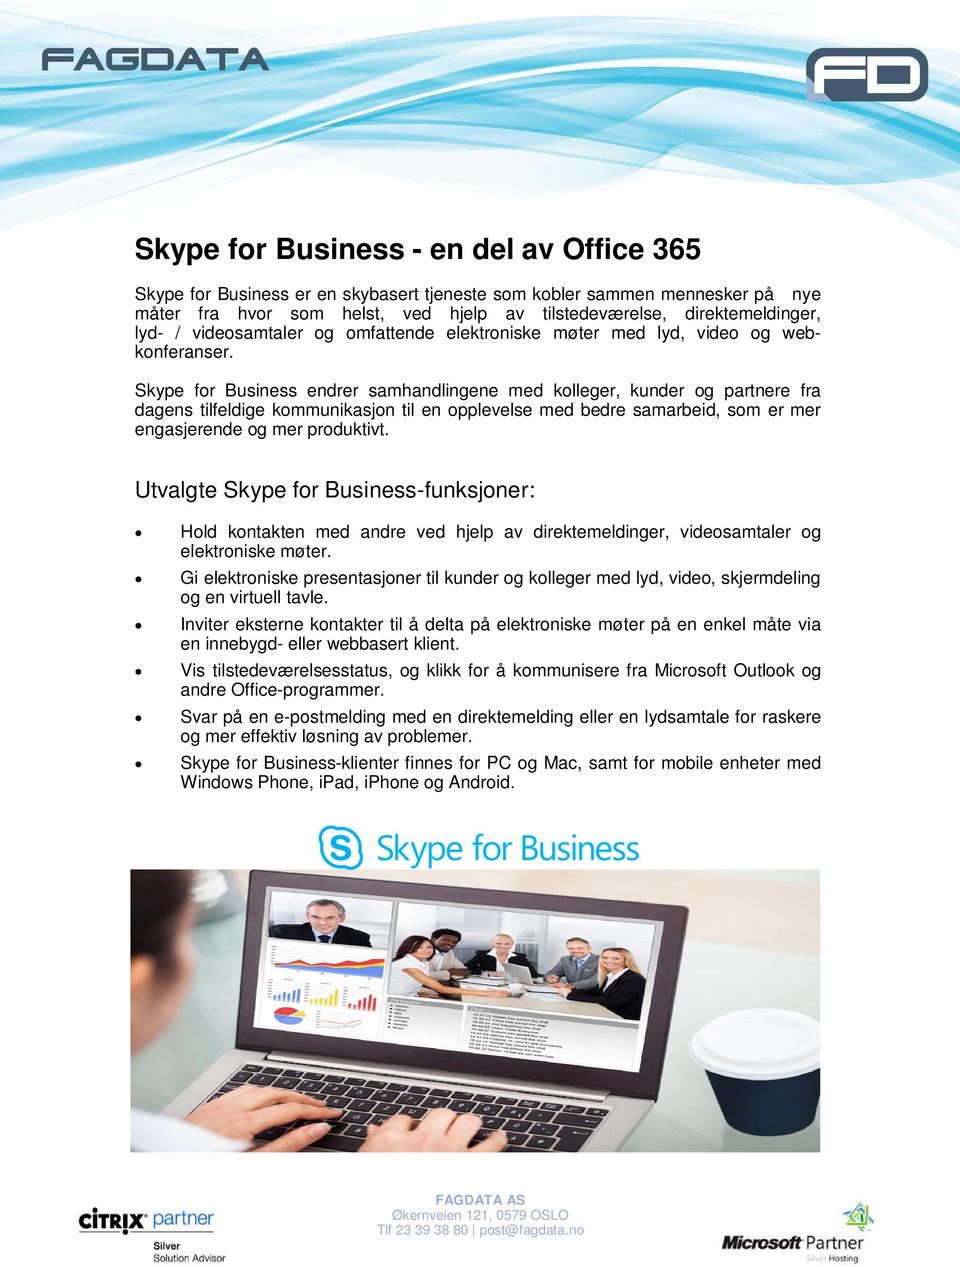 Skype for Business endrer samhandlingene med kolleger, kunder og partnere fra dagens tilfeldige kommunikasjon til en opplevelse med bedre samarbeid, som er mer engasjerende og mer produktivt.